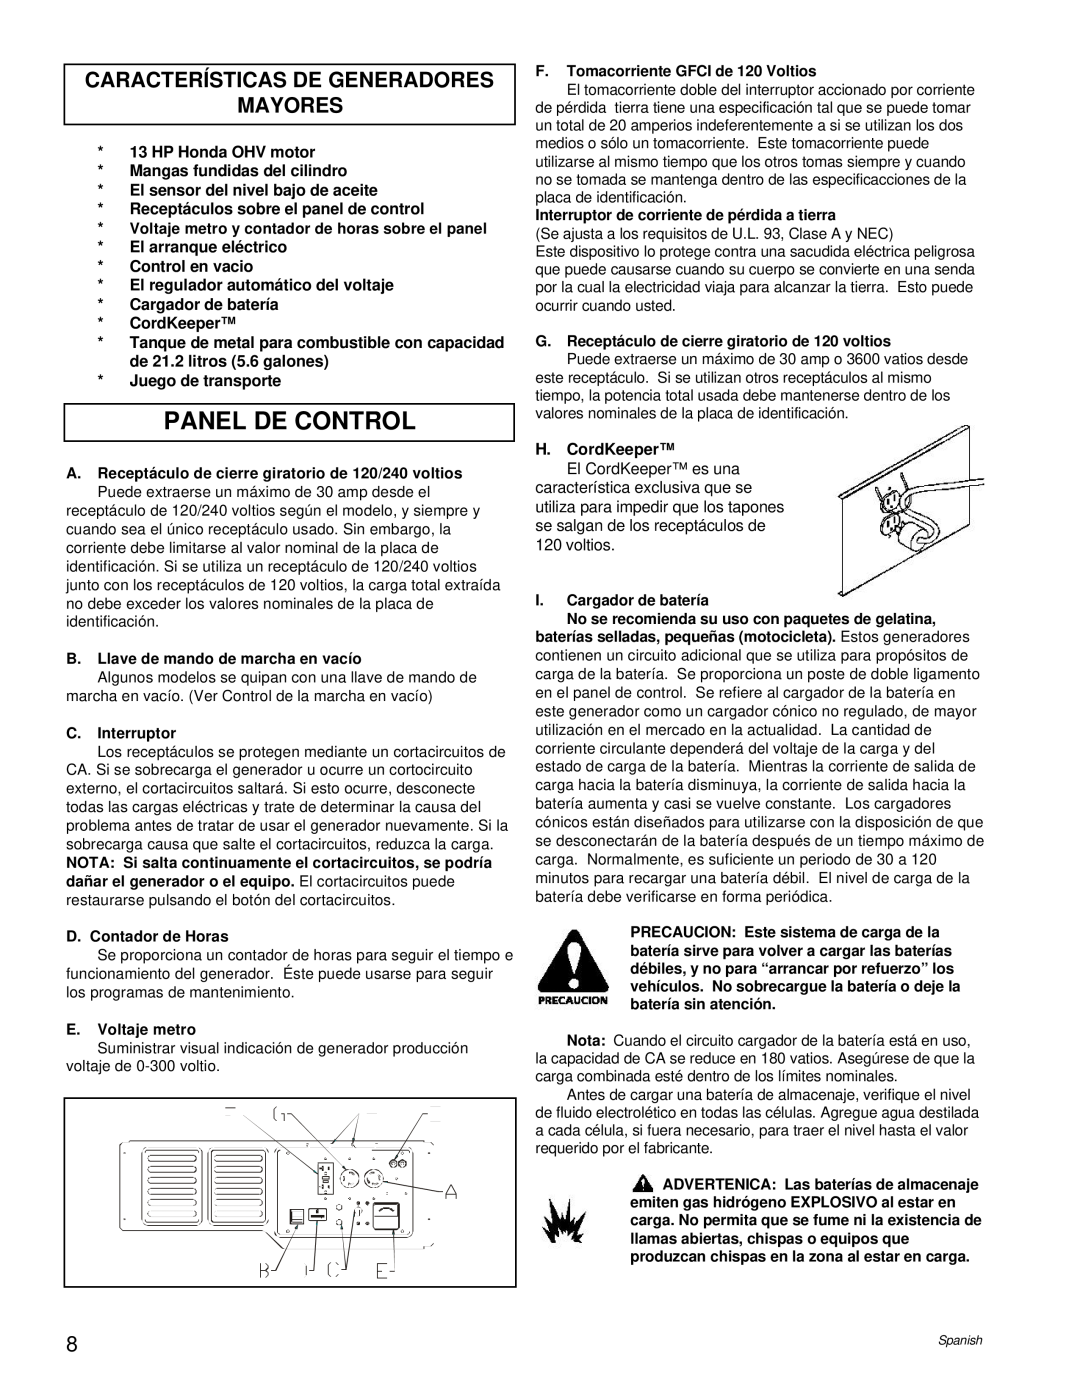 Powermate PC0496503.17 manual Panel De Control, Características De Generadores Mayores 